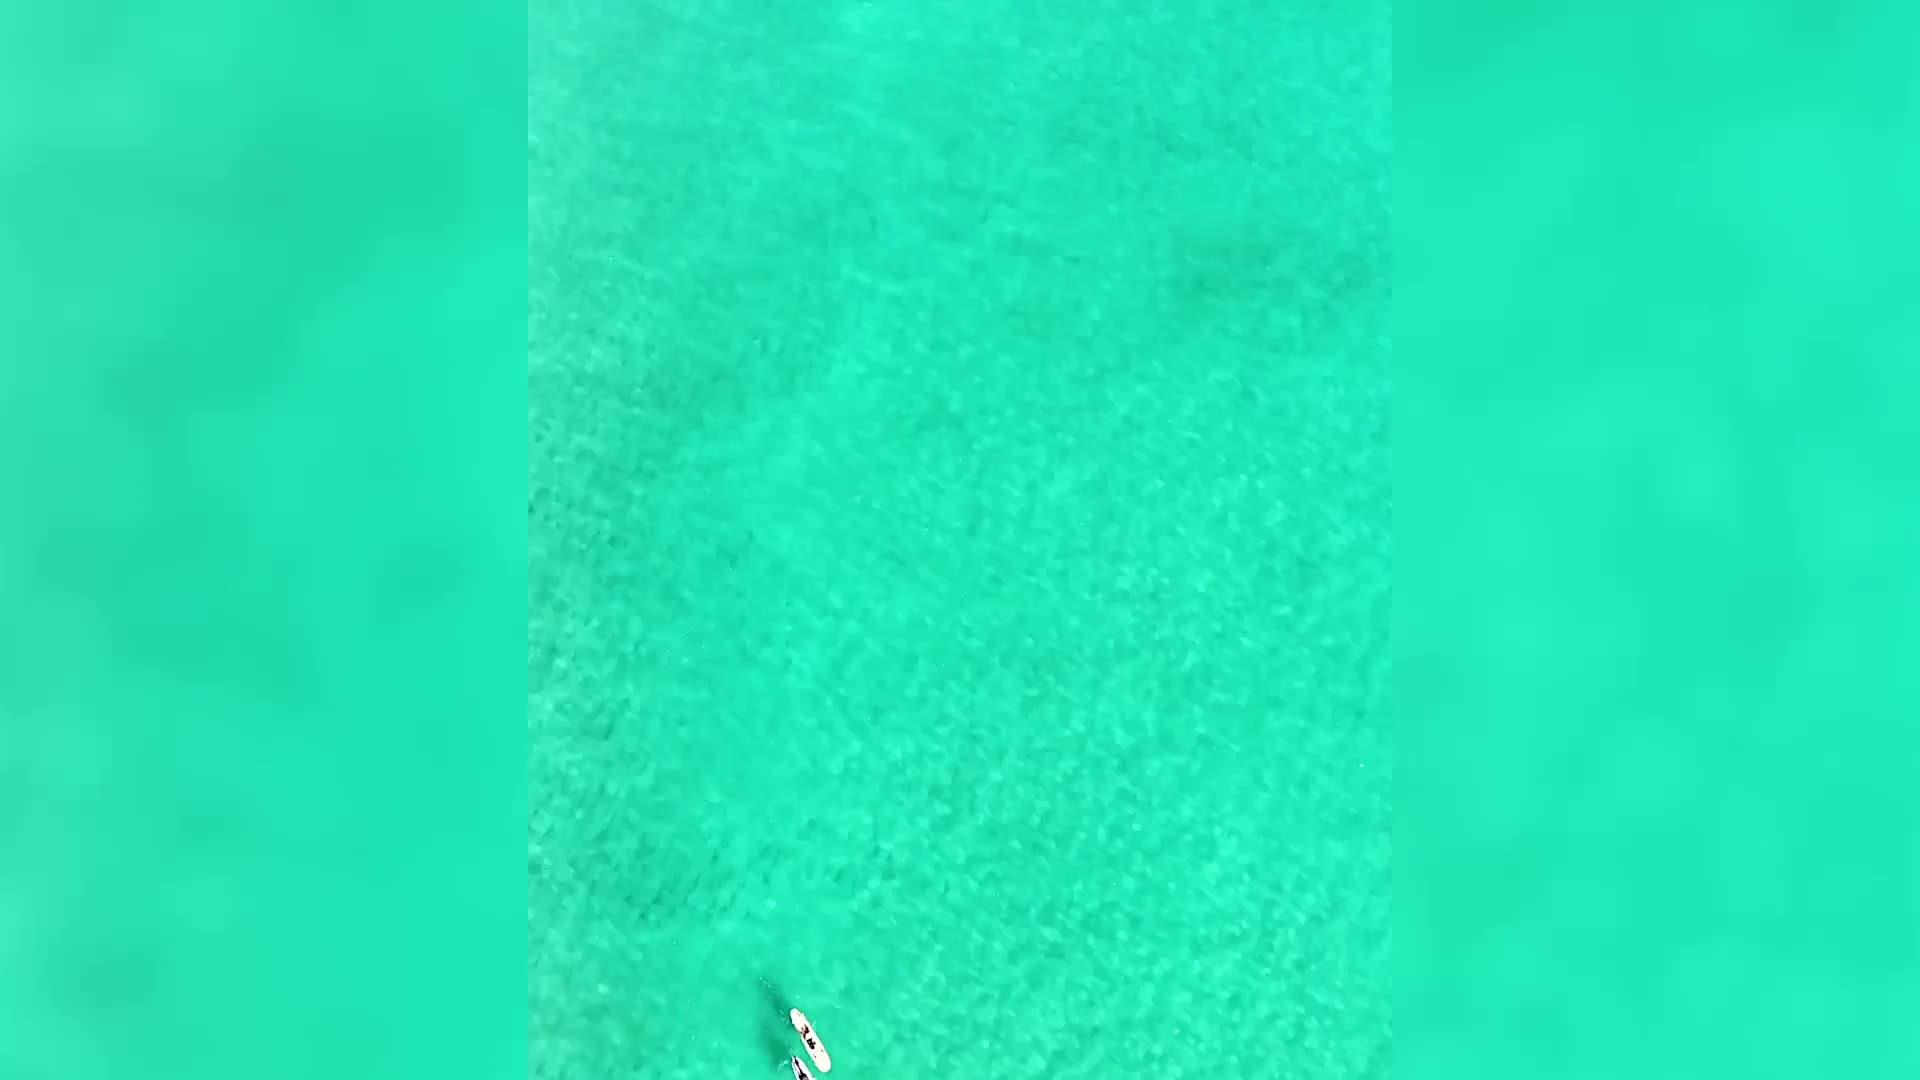 Video - Clip: Cá mập khổng lồ bơi gần những người lướt sóng và cái kết bất ngờ